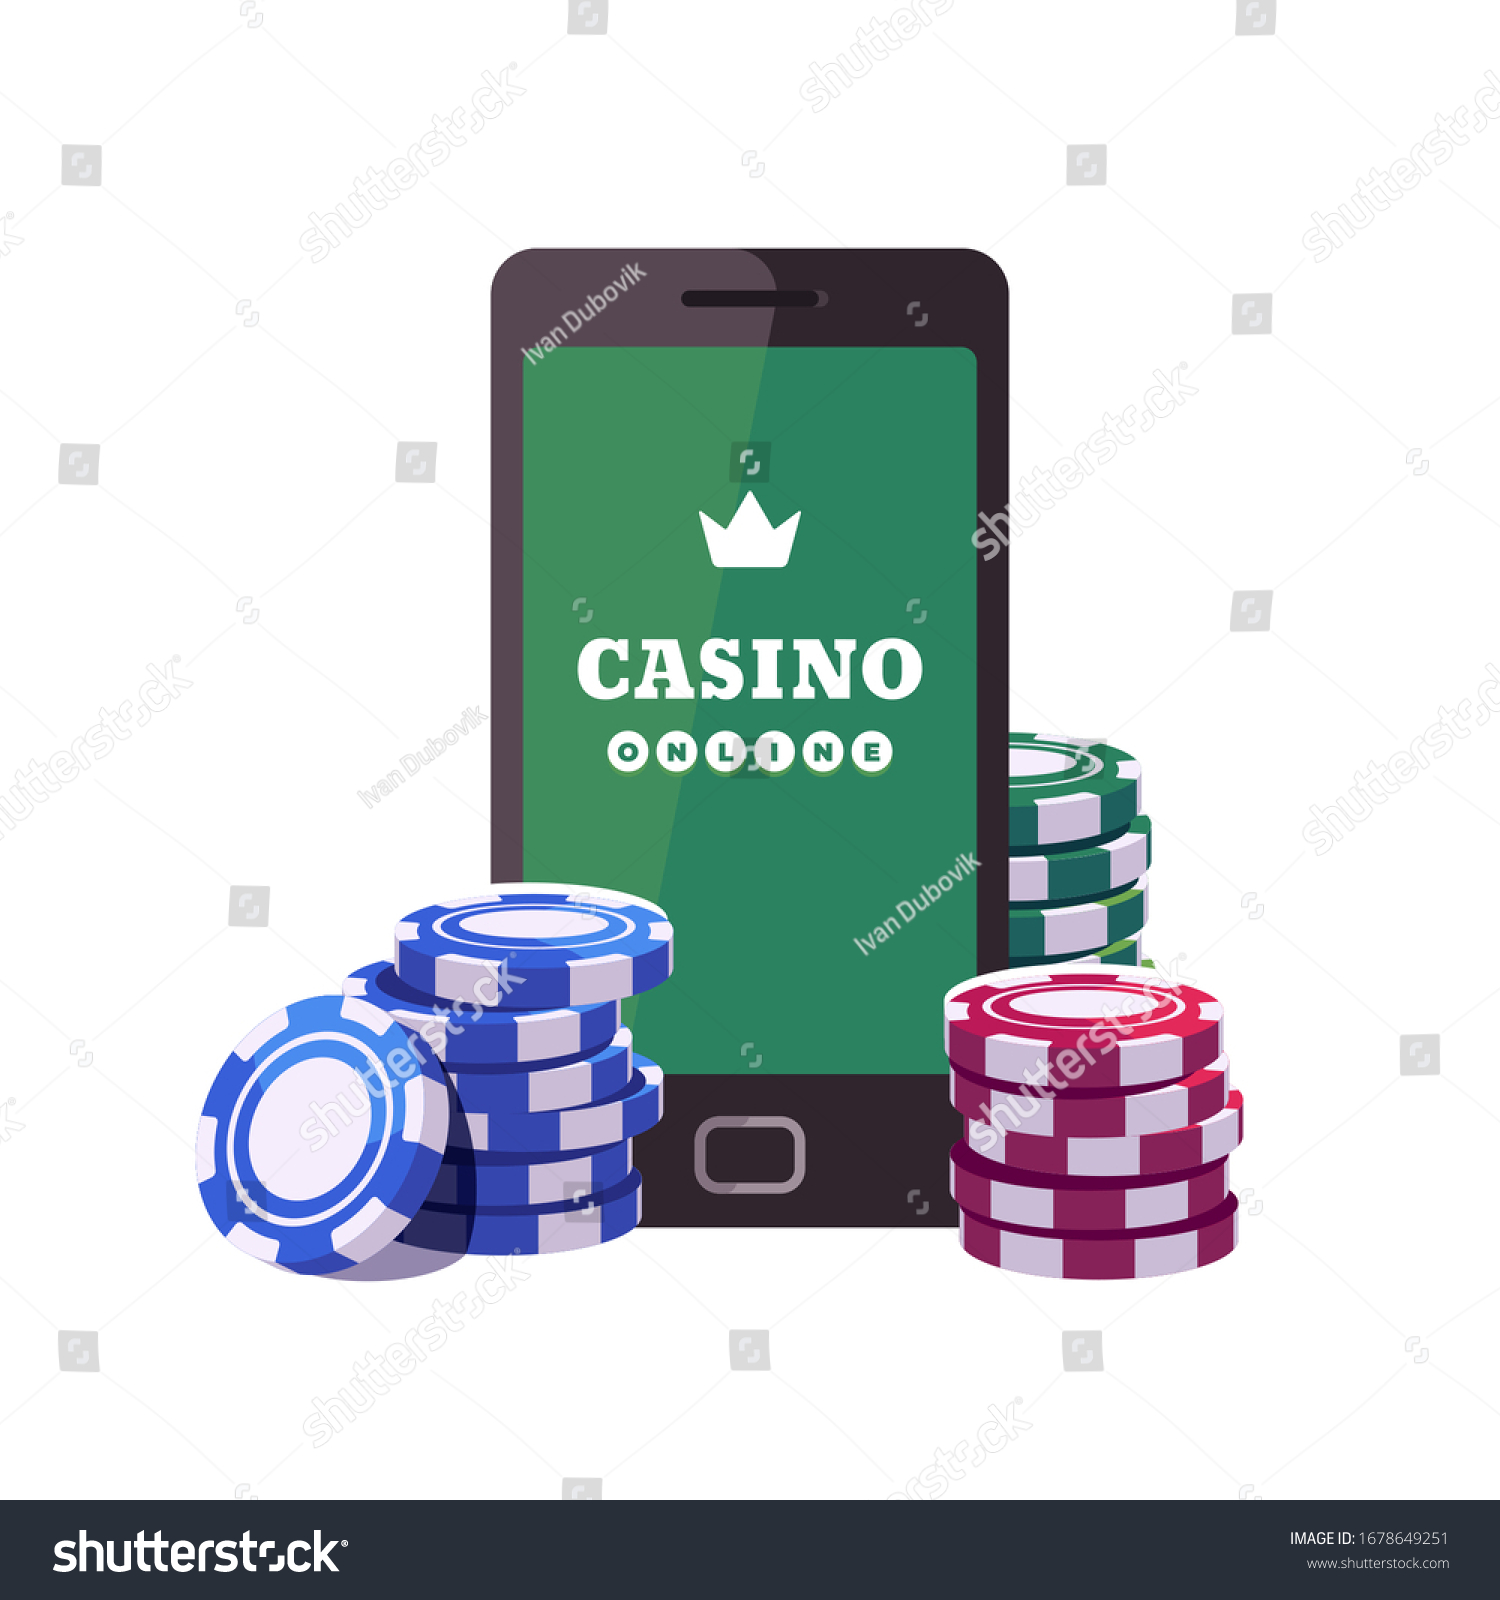 Smartphone online casino games